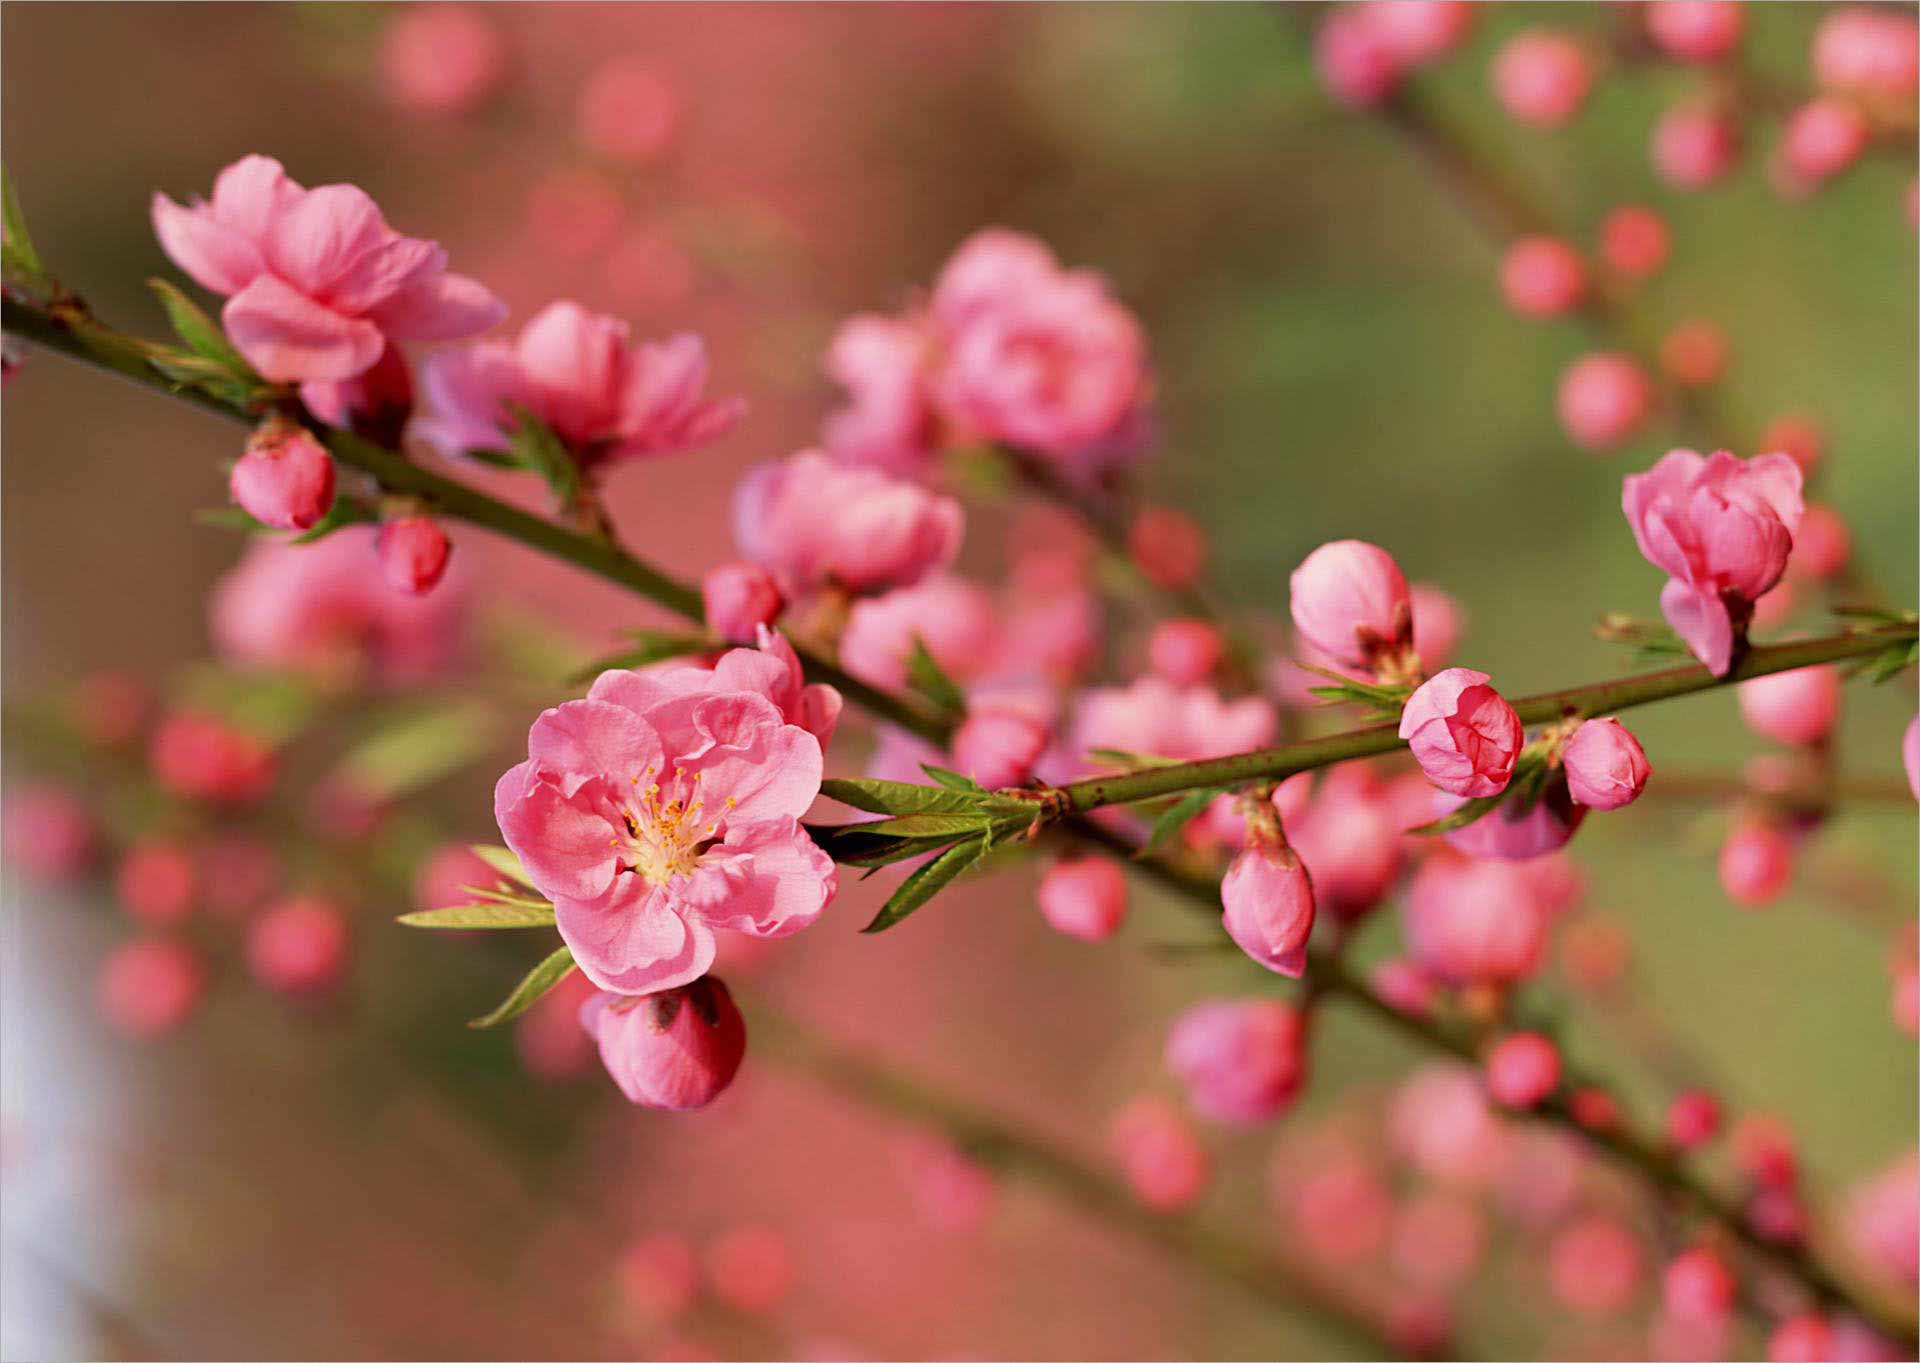 Hình ảnh hoa đào Tết mang lại cho bạn cảm giác đầy chân thành, muôn vẻ và rực rỡ. Hãy đến khám phá bộ sưu tập hình ảnh đẹp nhất về hoa đào Tết để khởi động cho một mùa Tết đầy ý nghĩa!